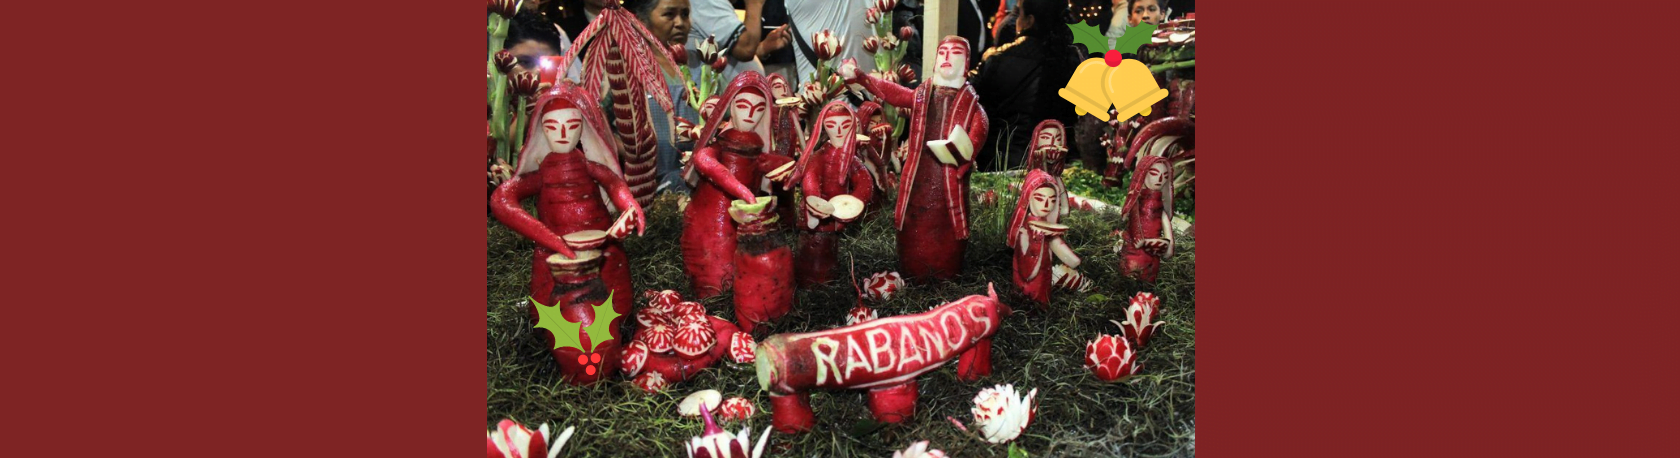 ¿Sabías que en Oaxaca se celebra una 'Noche de rábanos' durante las fiestas navideñas? - Easy Español